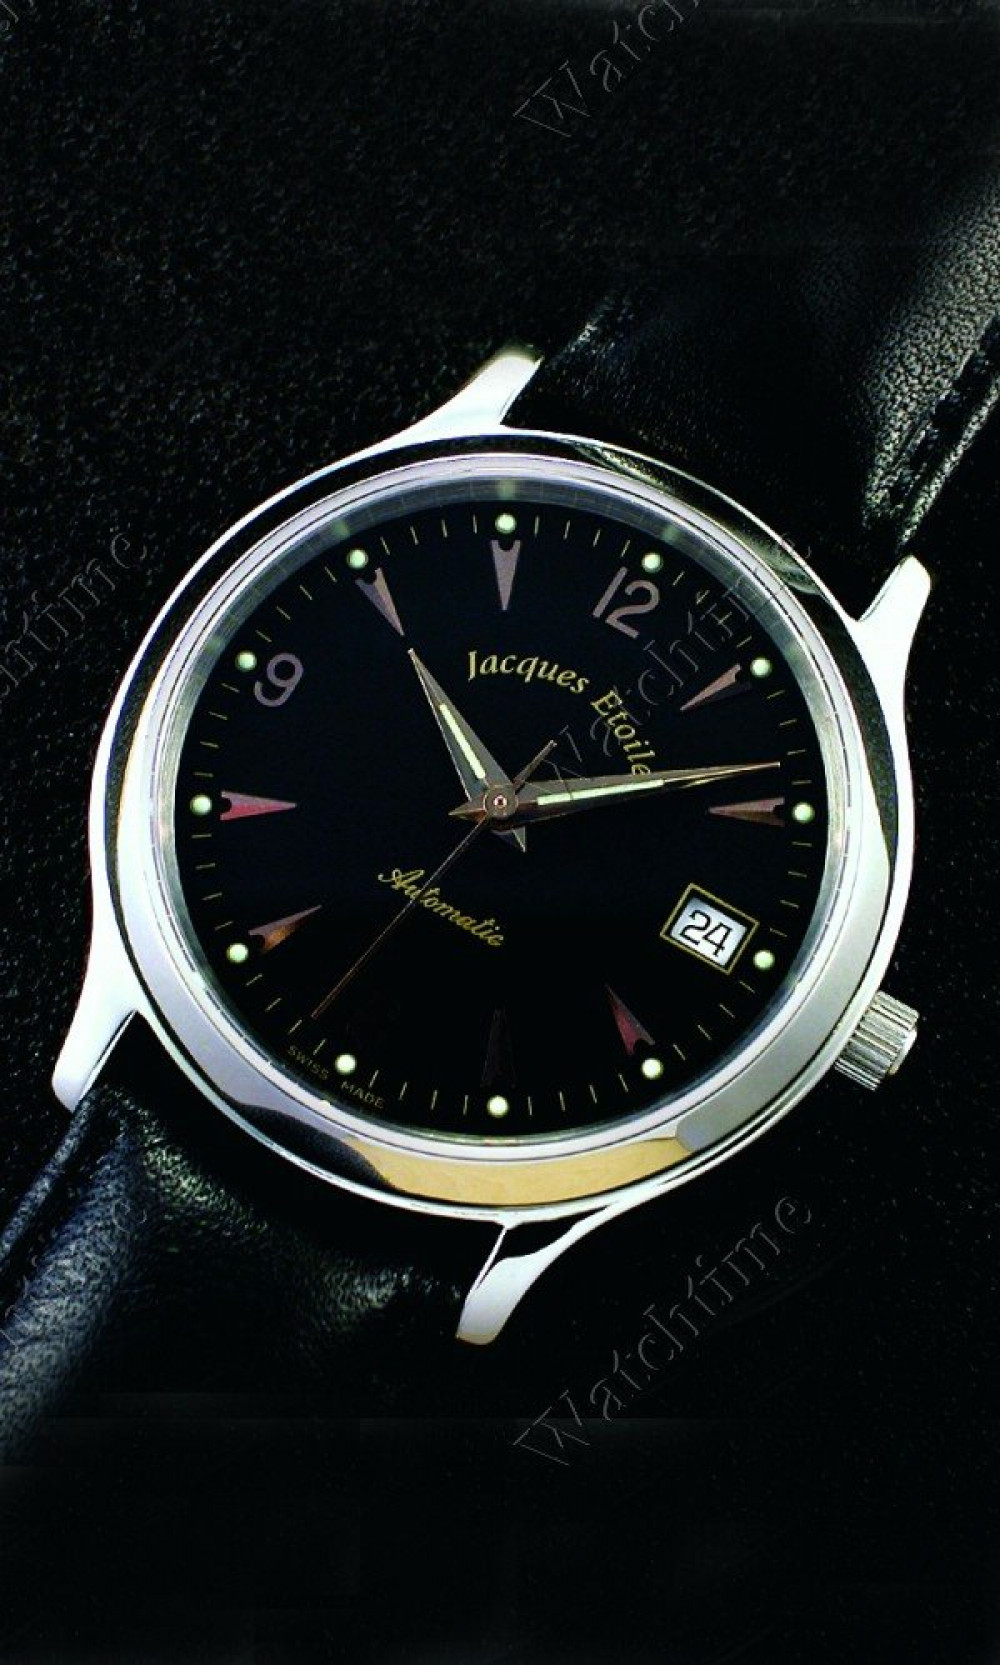 Zegarek firmy Jacques Etoile, model Genua Imperial